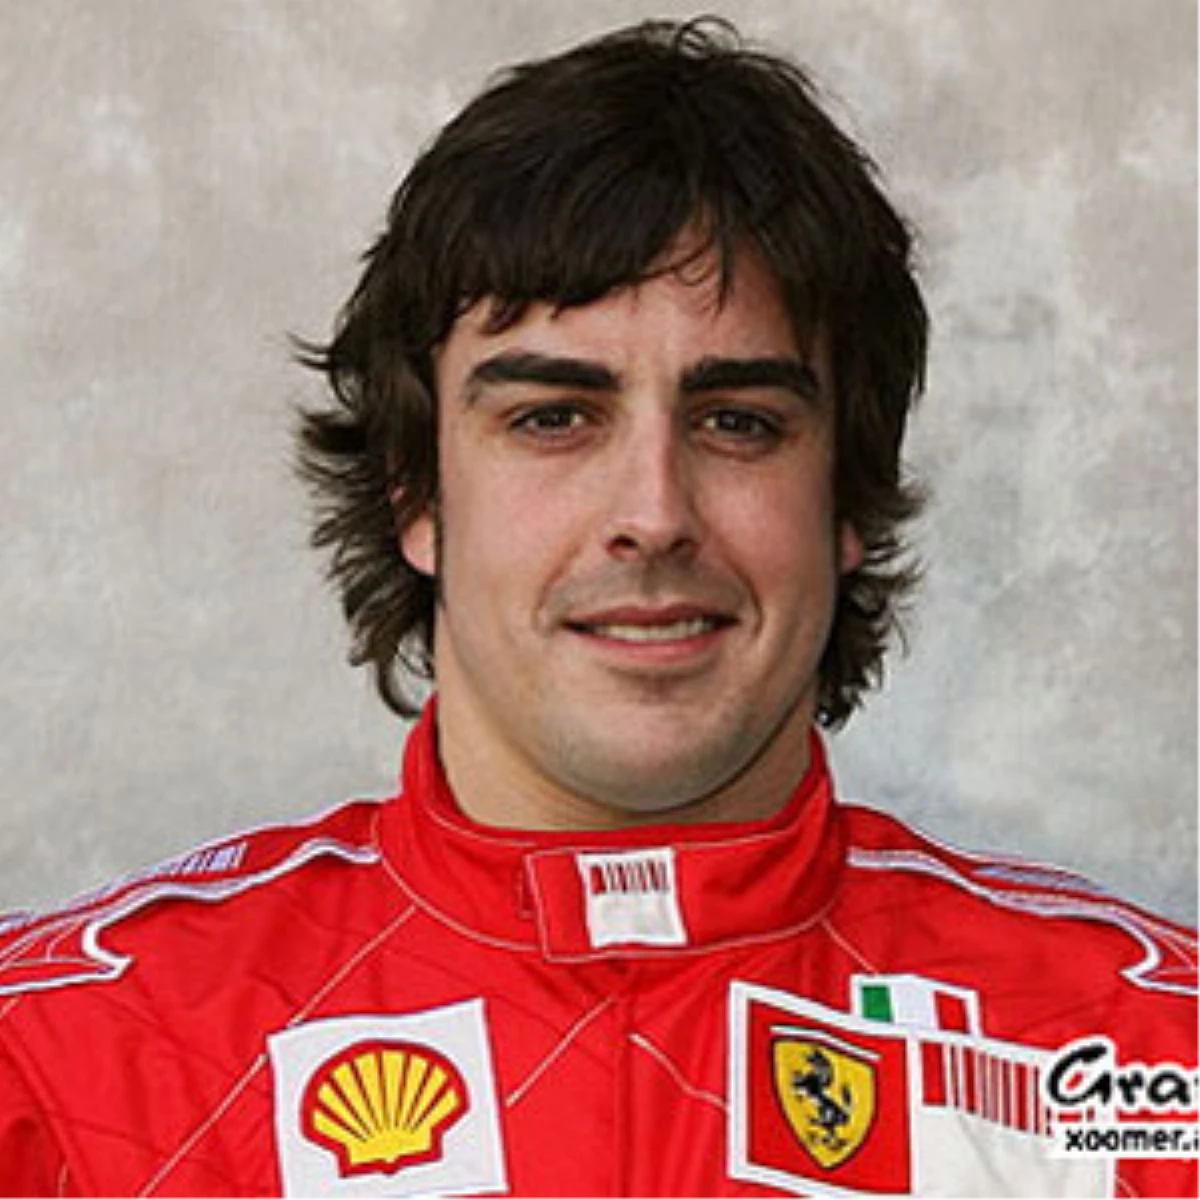 Alonso\'ya Göre Ricciardo\'nun Şampiyonluk Şansı Yok